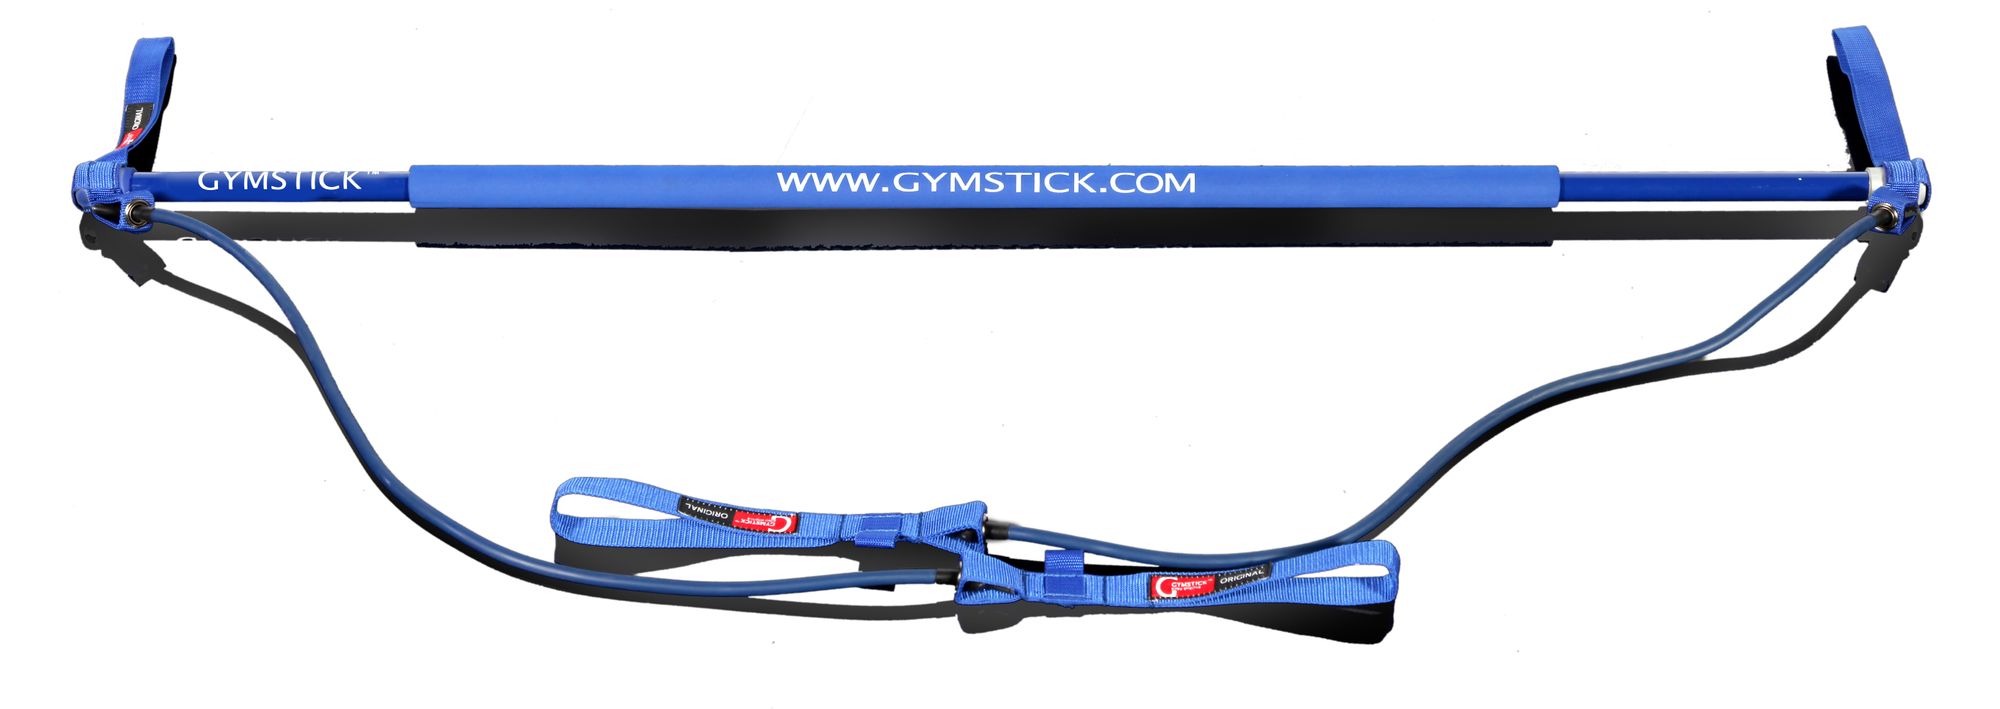 Gymstick Original 2.0 Trainingsgerät, mittel/blau